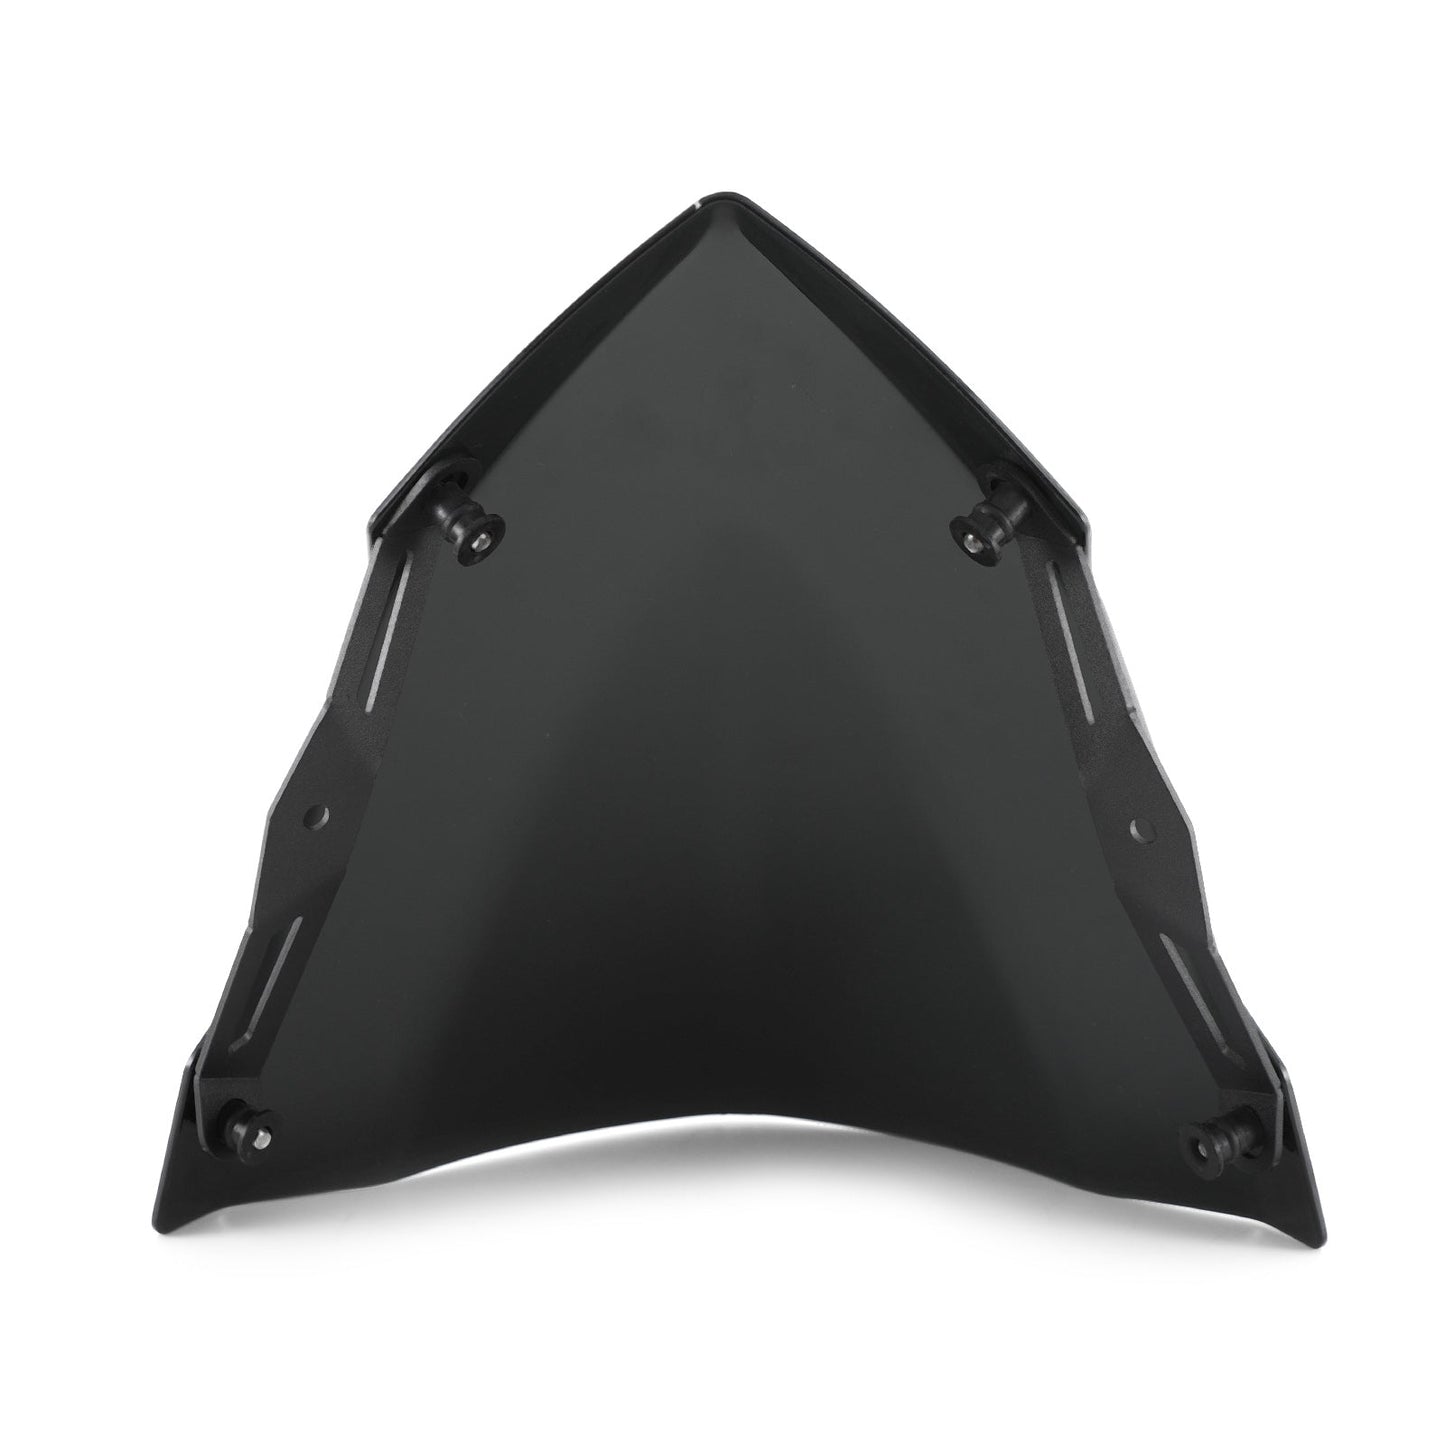 Windschutzscheibe Schildschutzschutz für Yamaha MT-03 MT-25 2020-2021